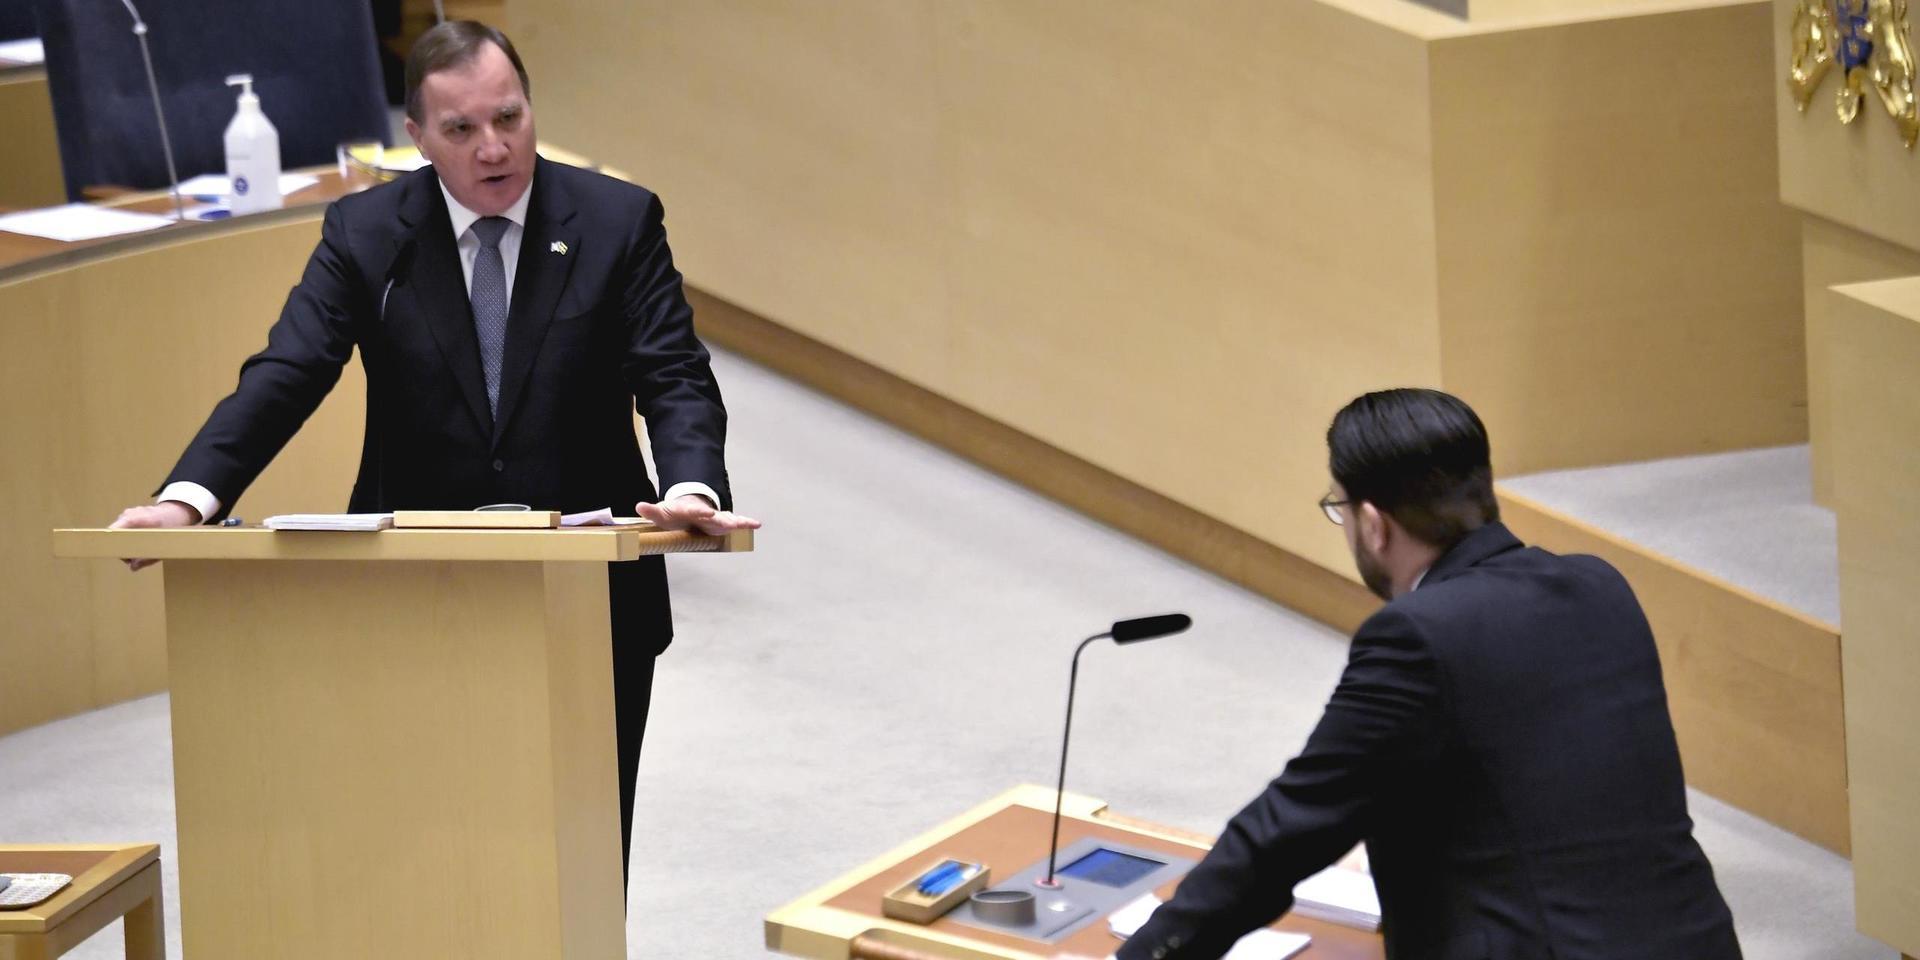 Statsminister Stefan Löfven (S) varnade för polarisering likt den i USA, med kritik avsedd för Sverigedemokraternas Jimmie Åkesson under partiledardebatten.